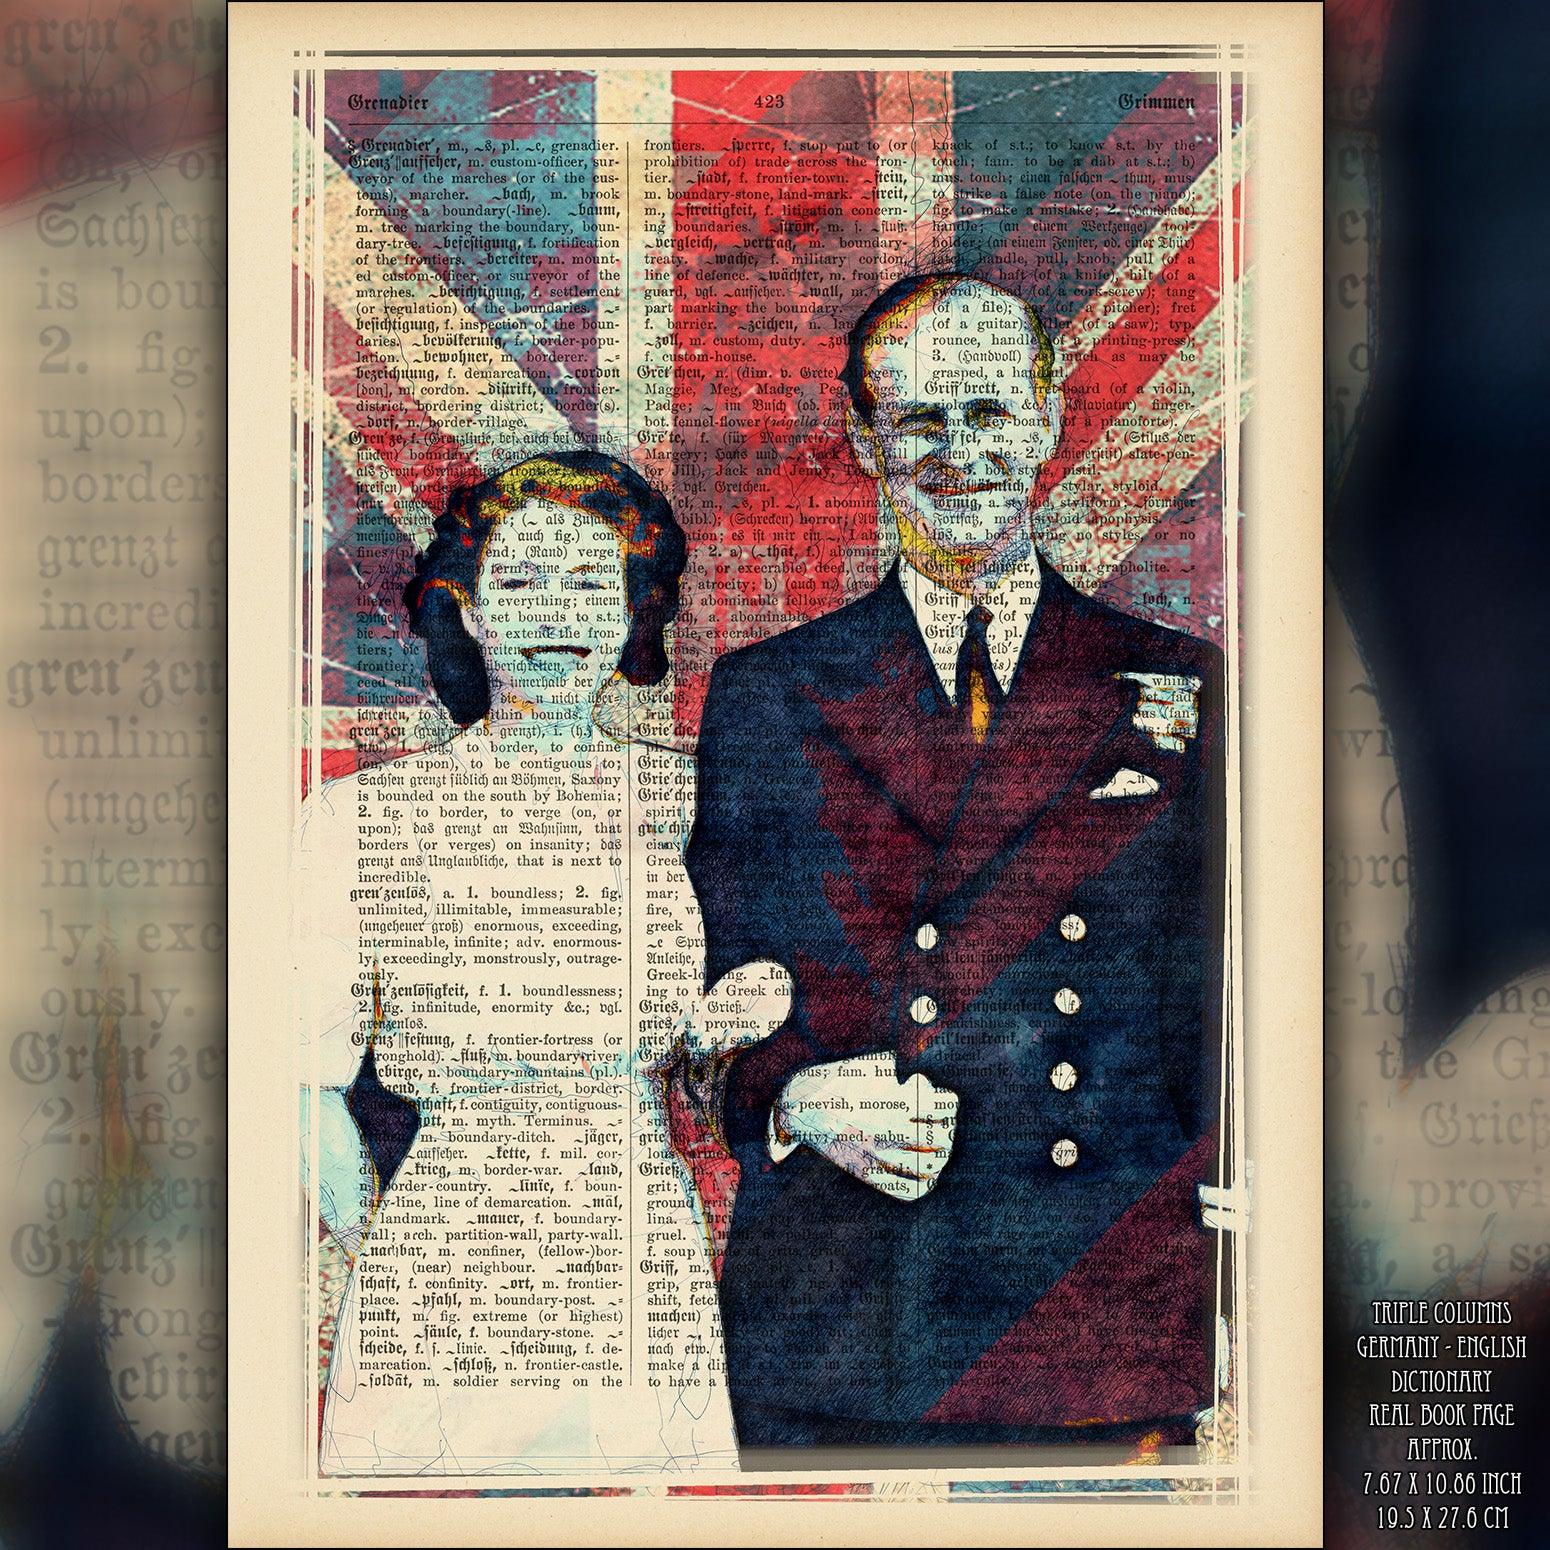 Queen Elizabeth II And Prince Philip Art on Vintage Dictionary Page - ArtCursor